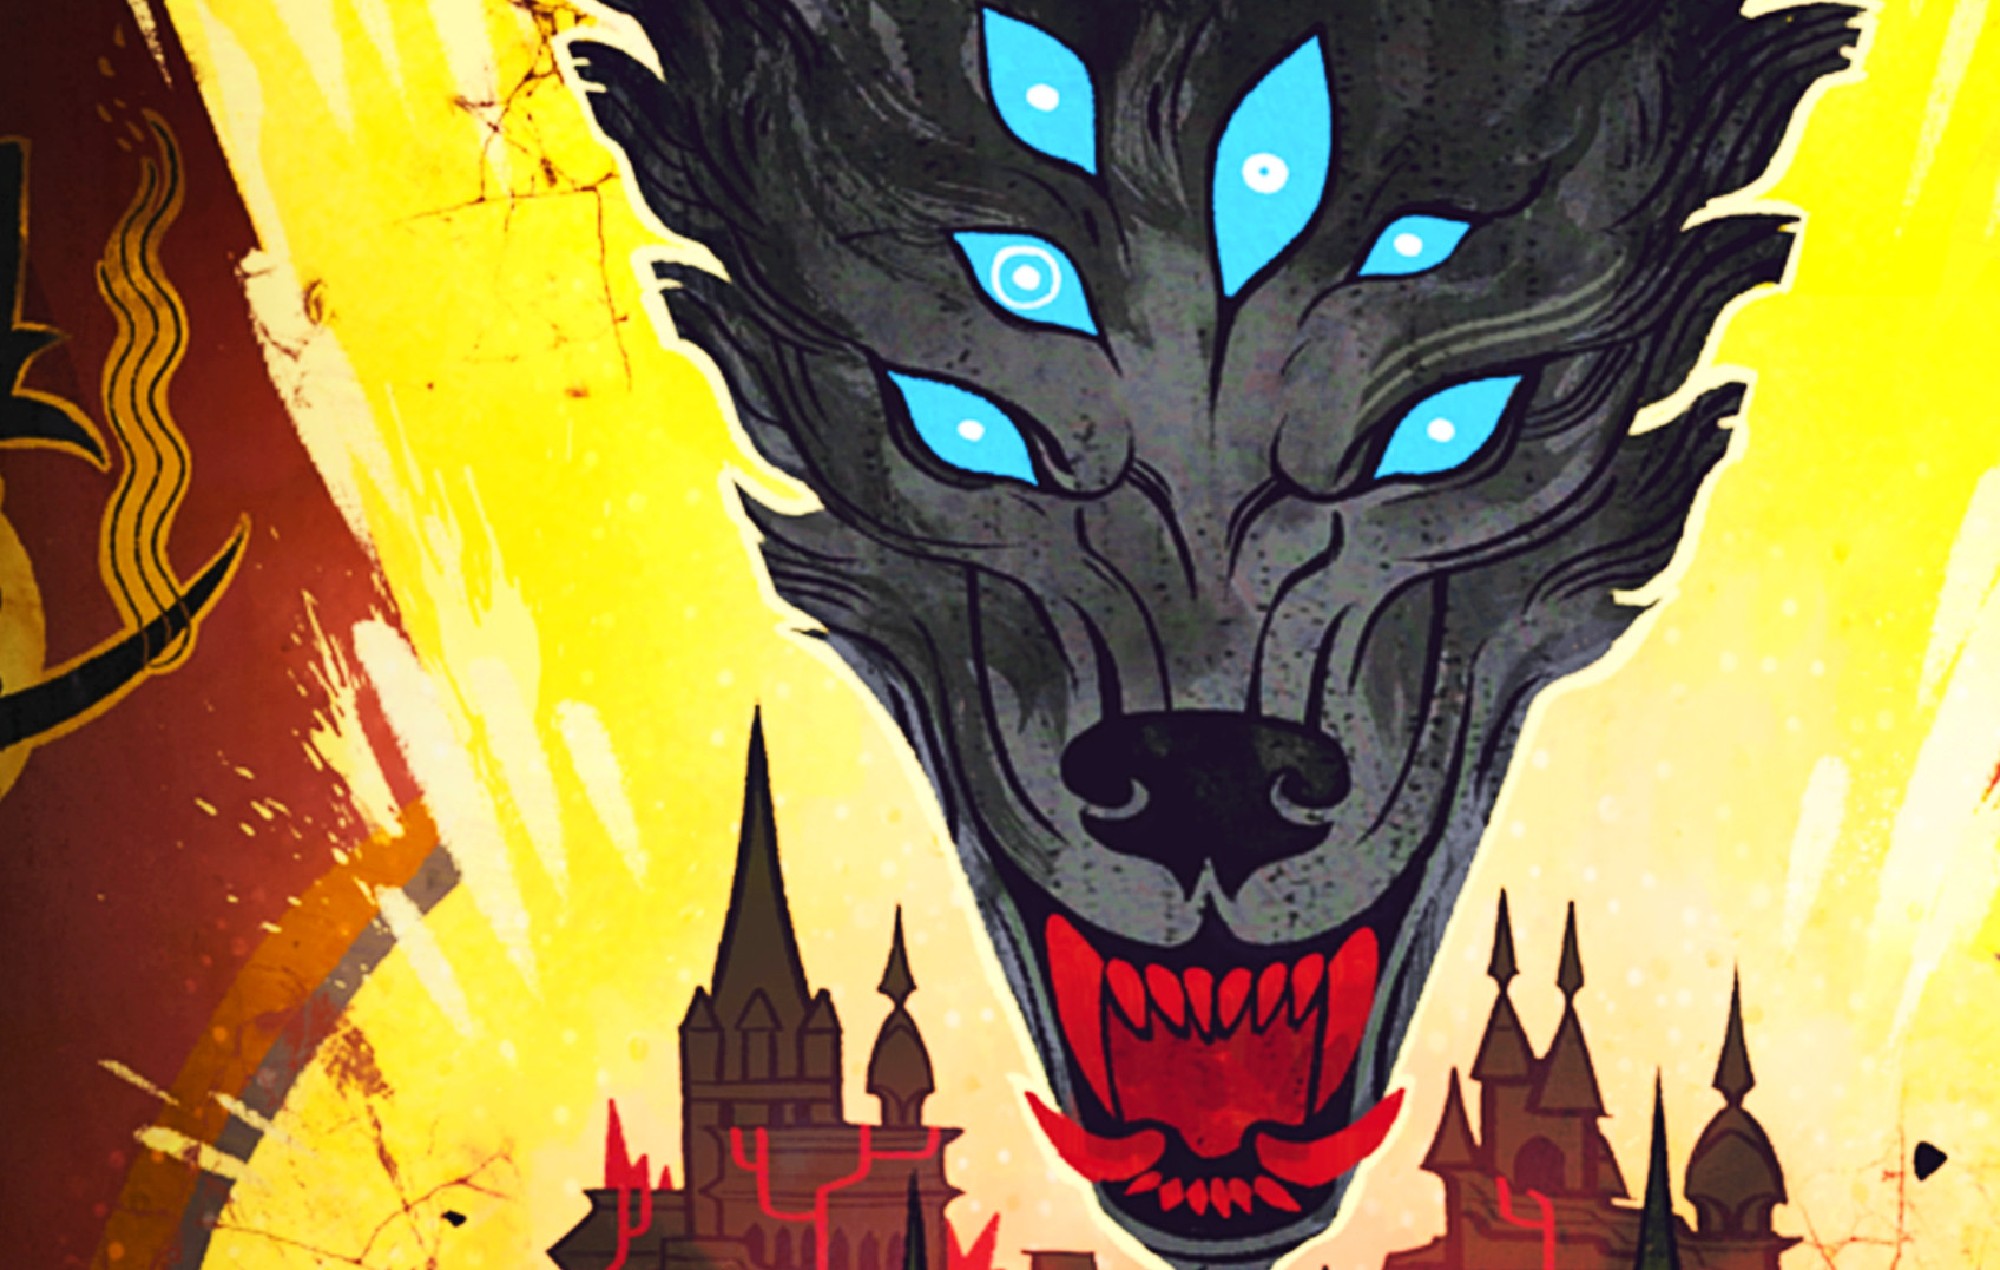 Dragon Age: Dreadwolf' podría colarse en 2025, según un informe